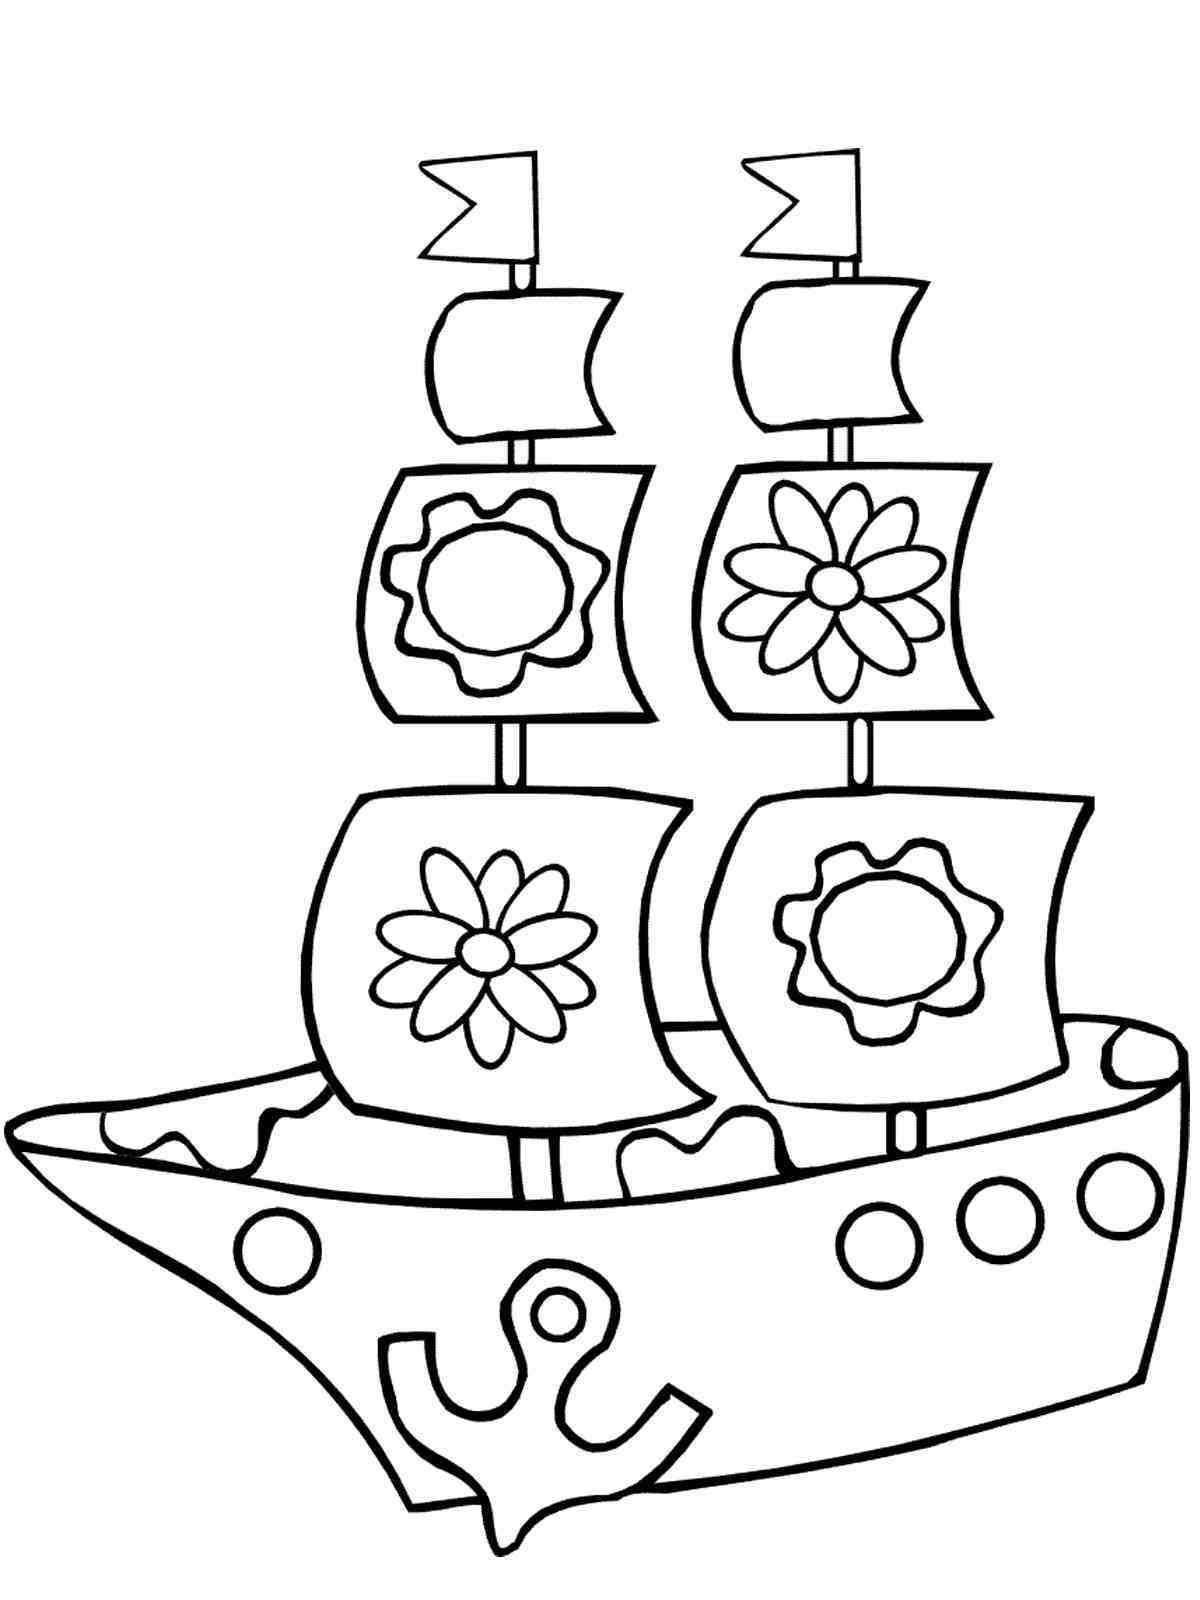 Яркая раскраска лодки для детей 2-3 лет